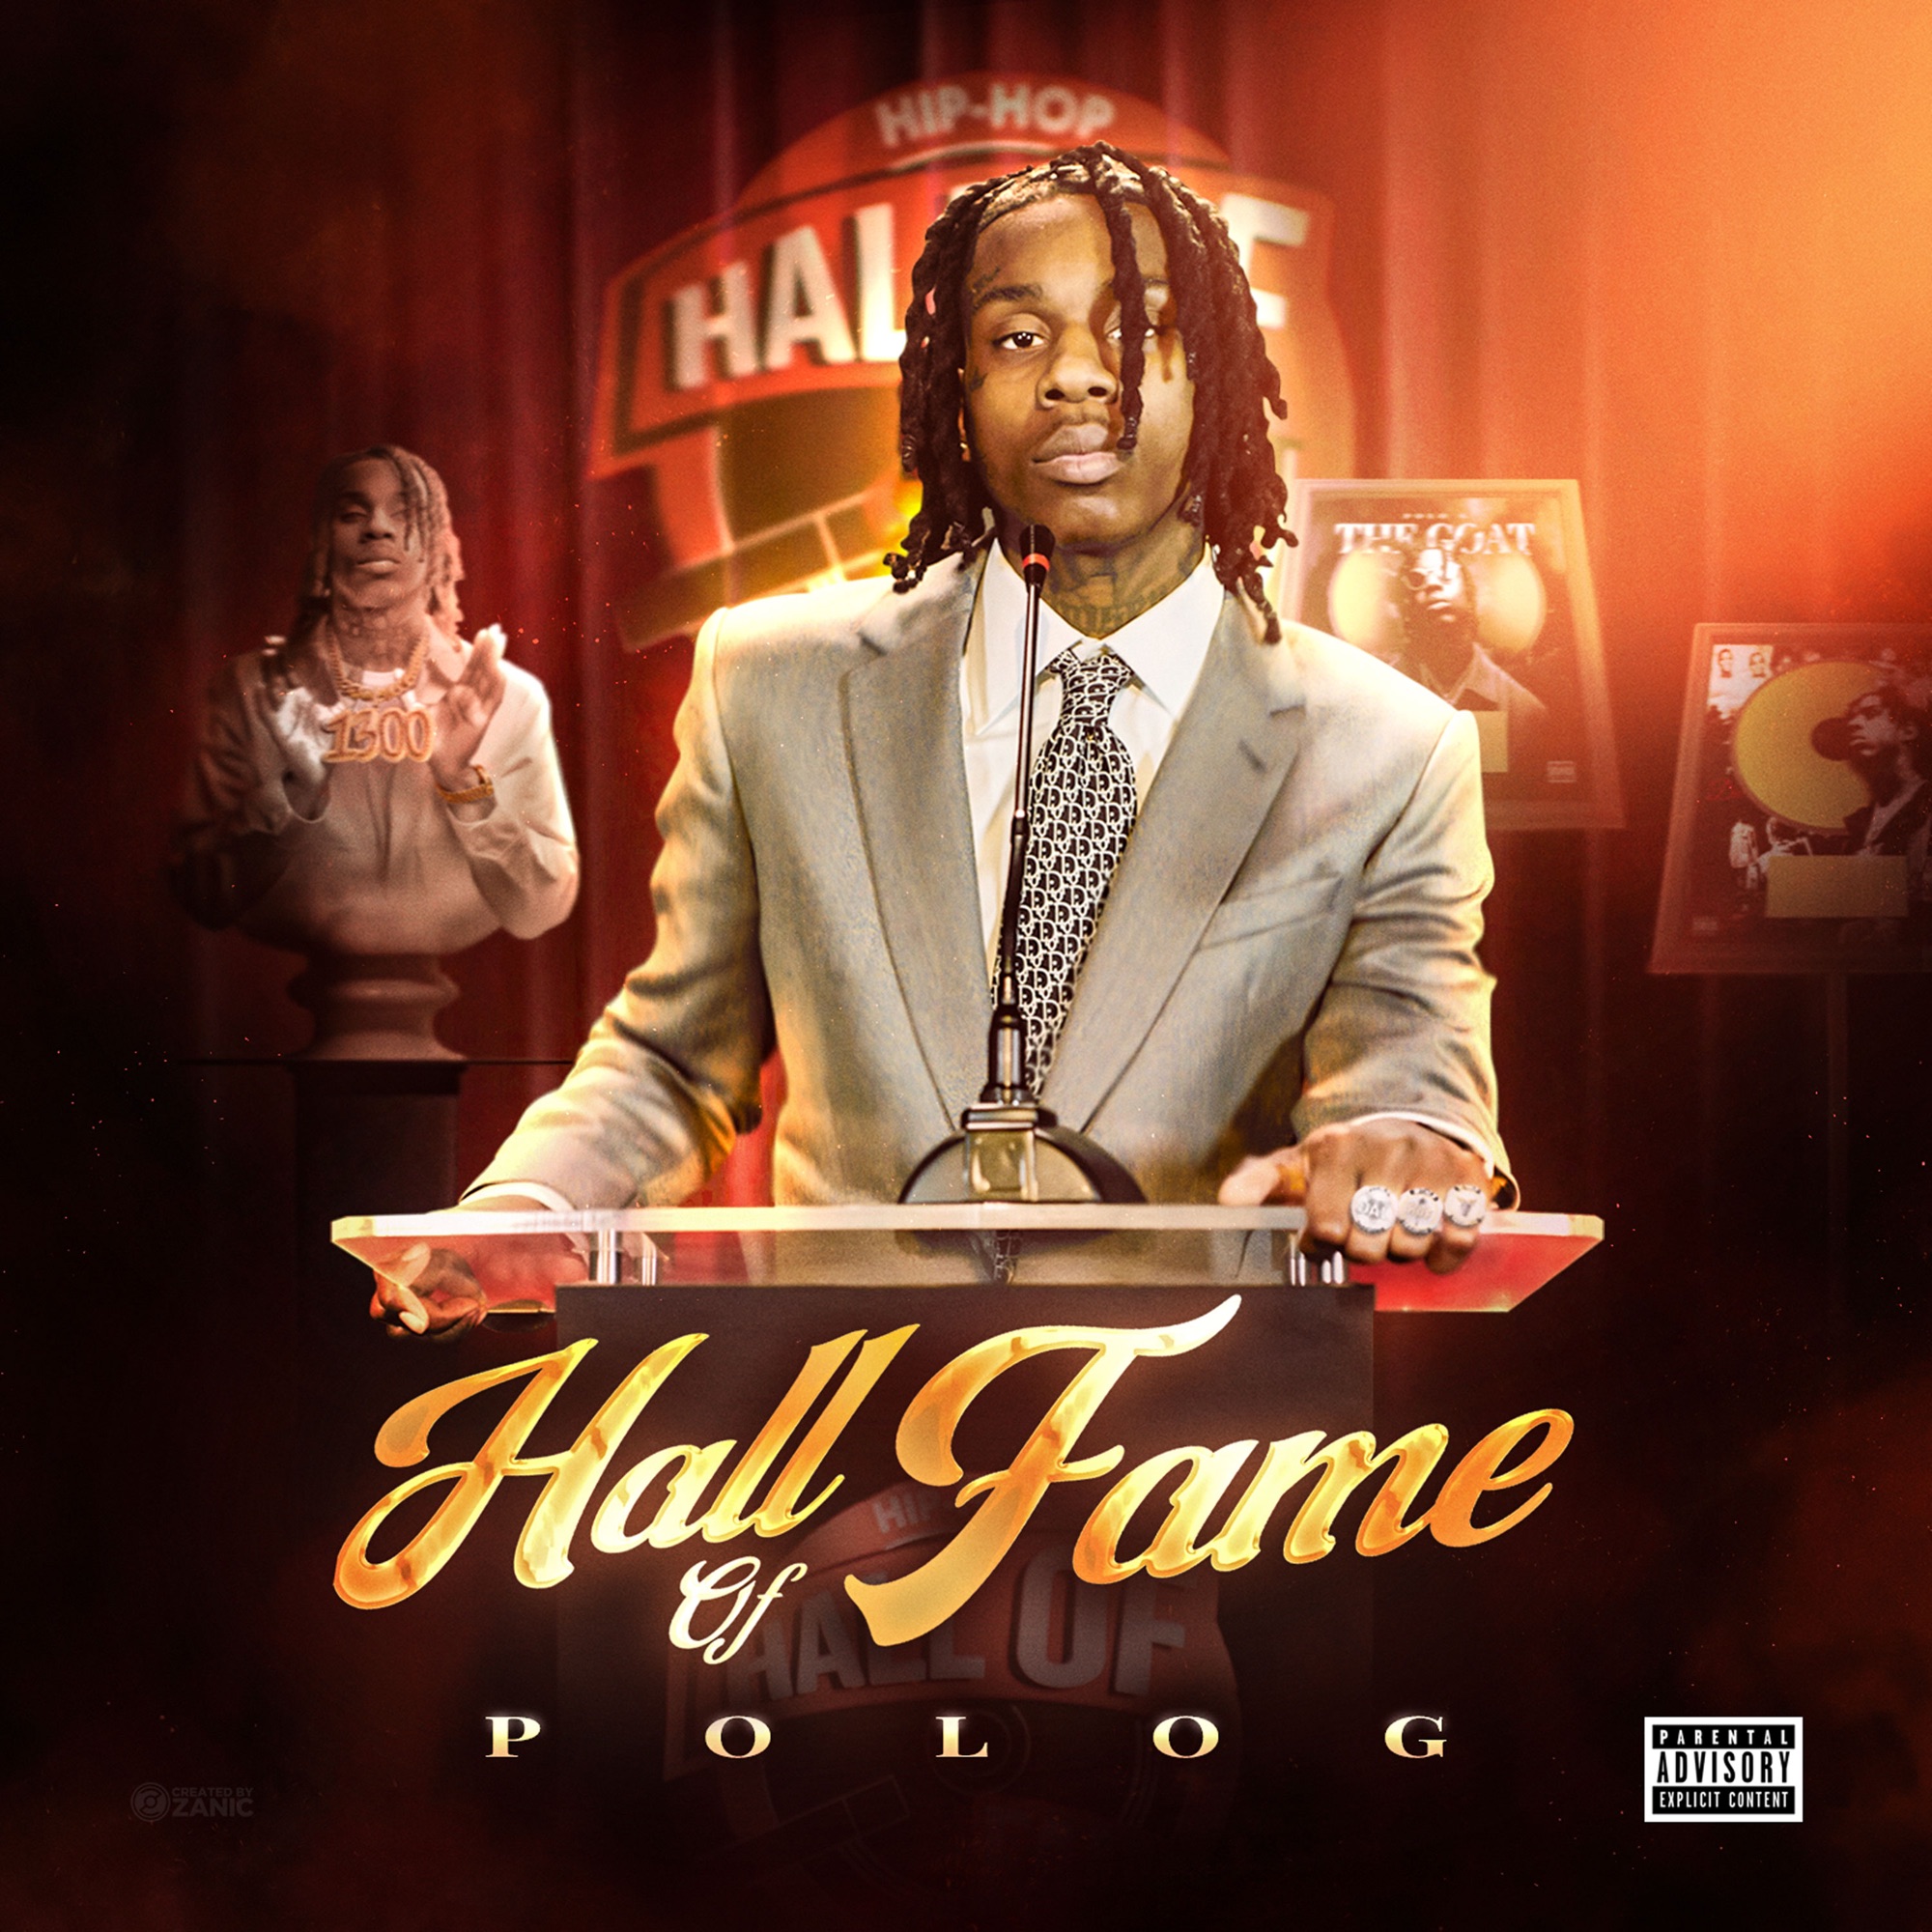 Polo G - Hall of Fame